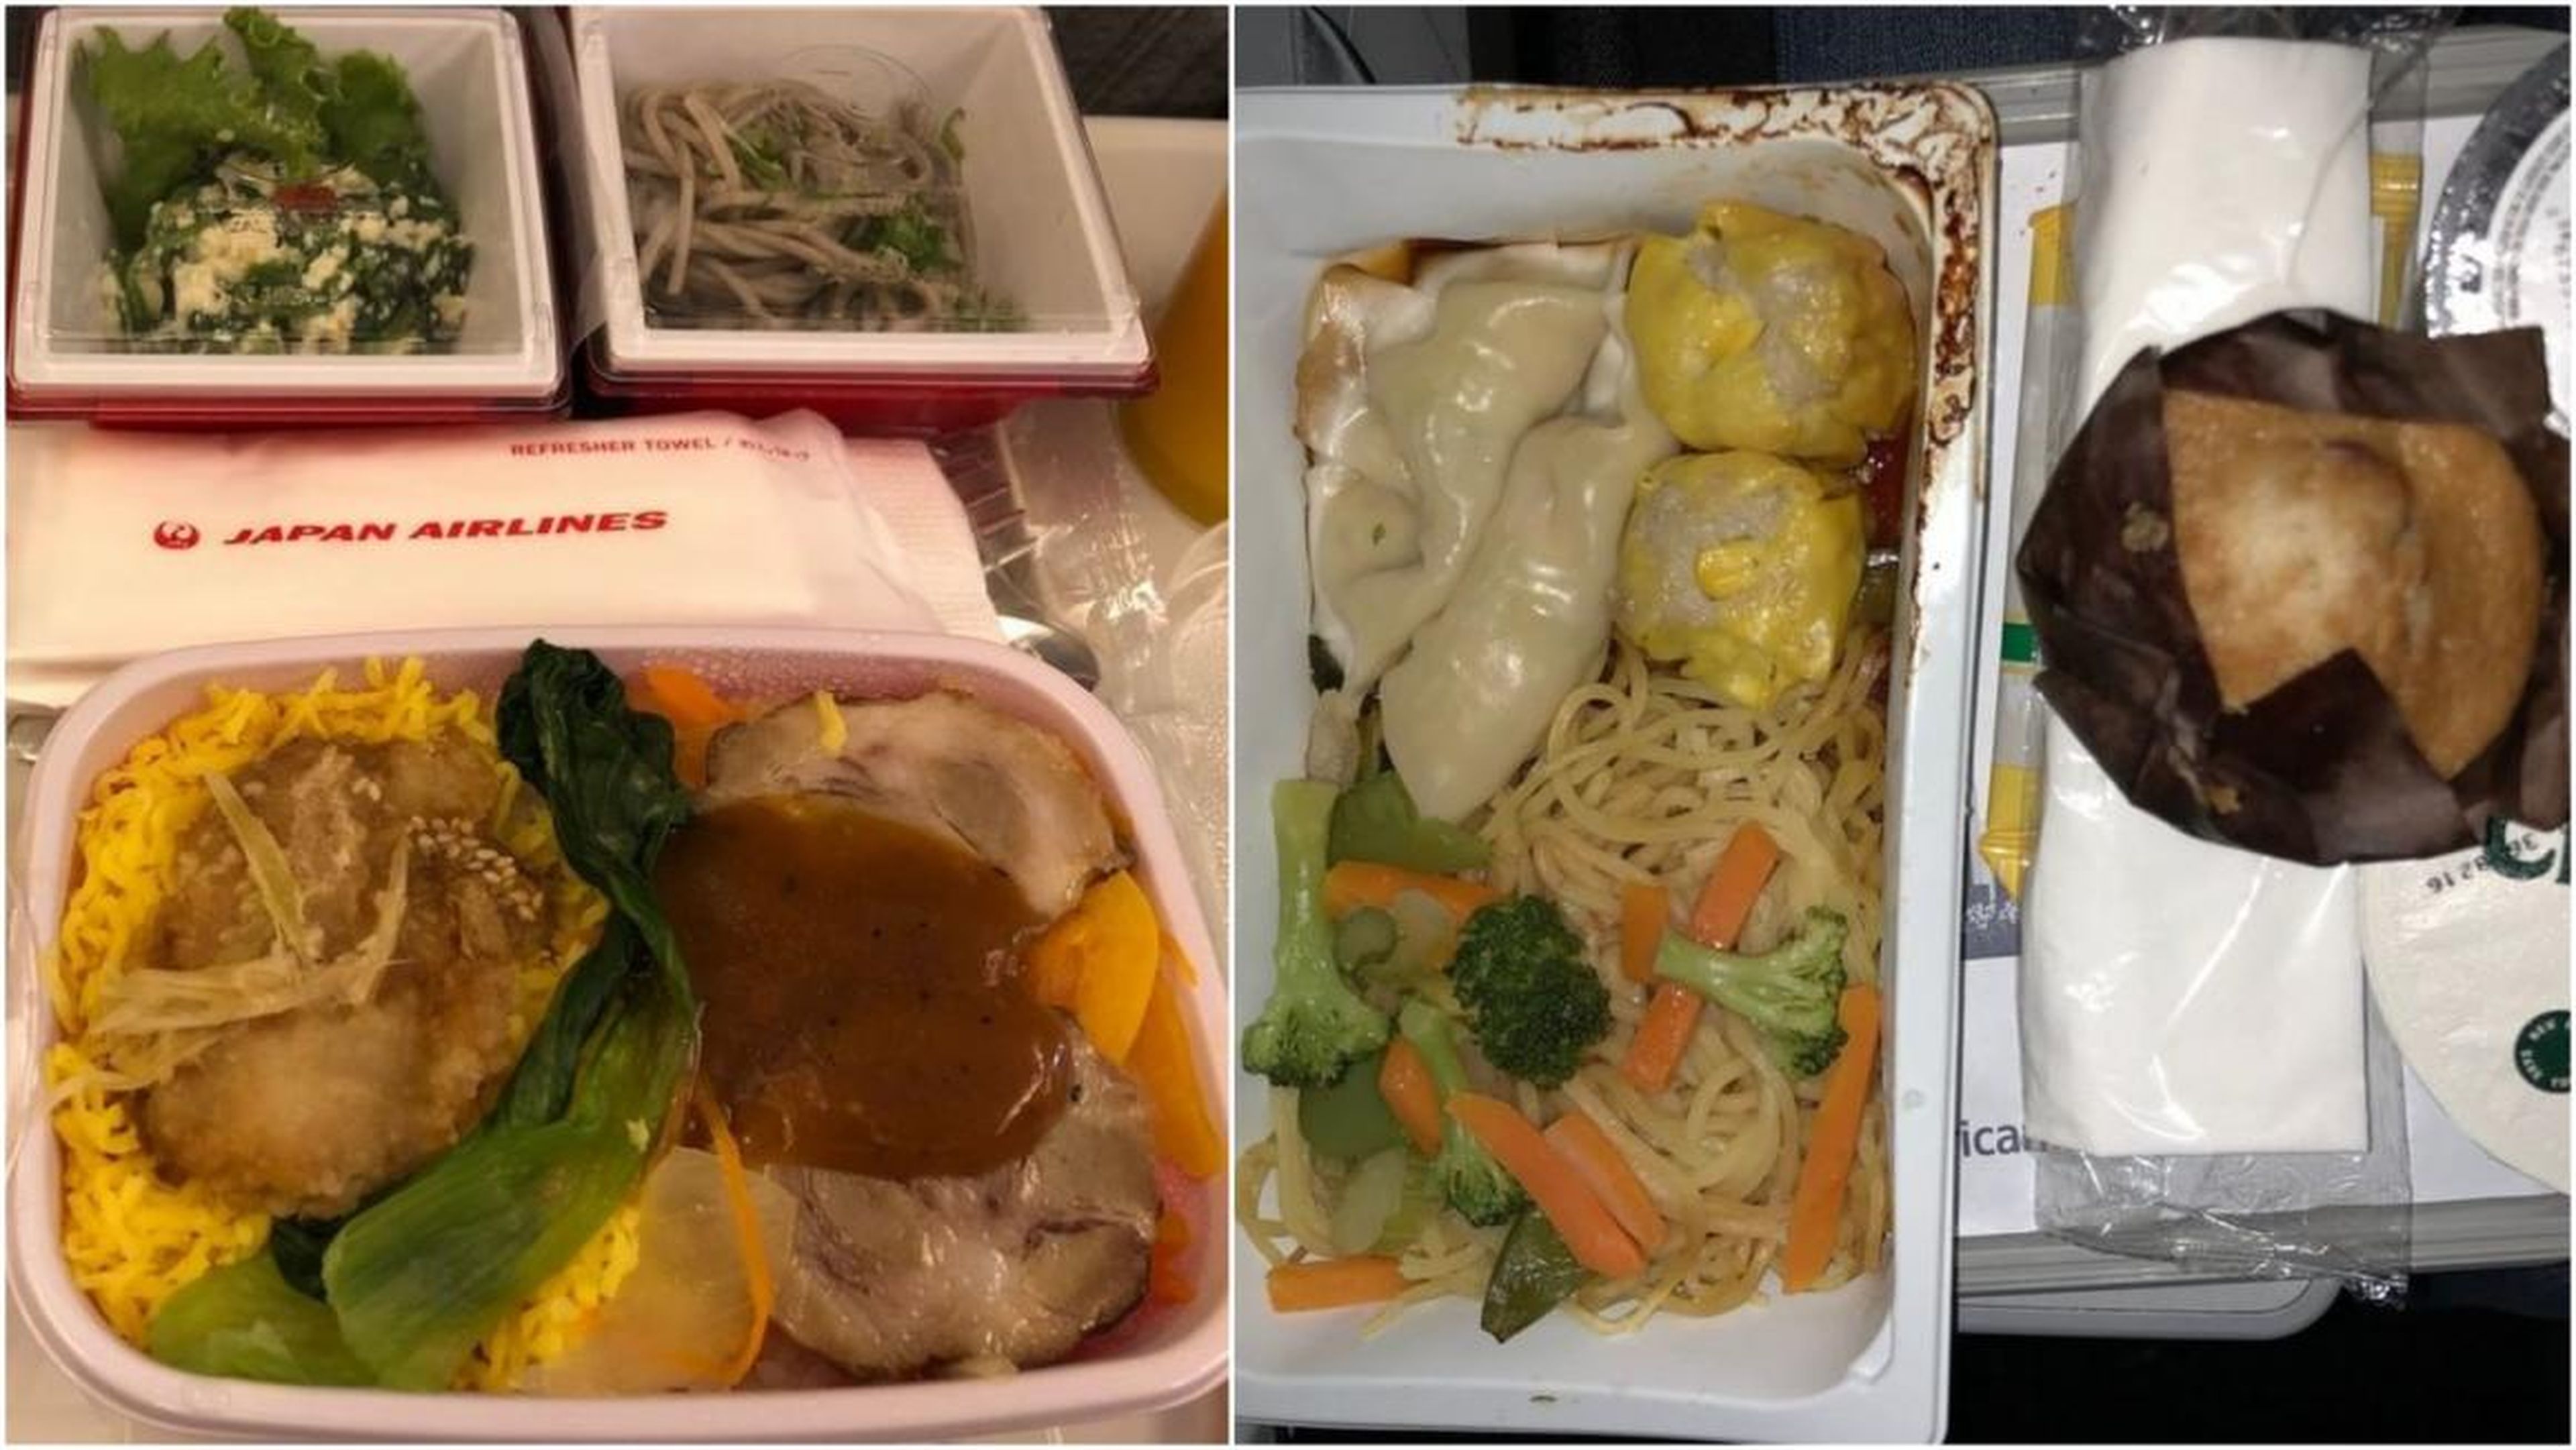 El menú en clase turista de una aerolínea, como Japan Airlines a la izquierda, puede ser muy distinto de otras aerolíneas, como American Airlines a la derecha.